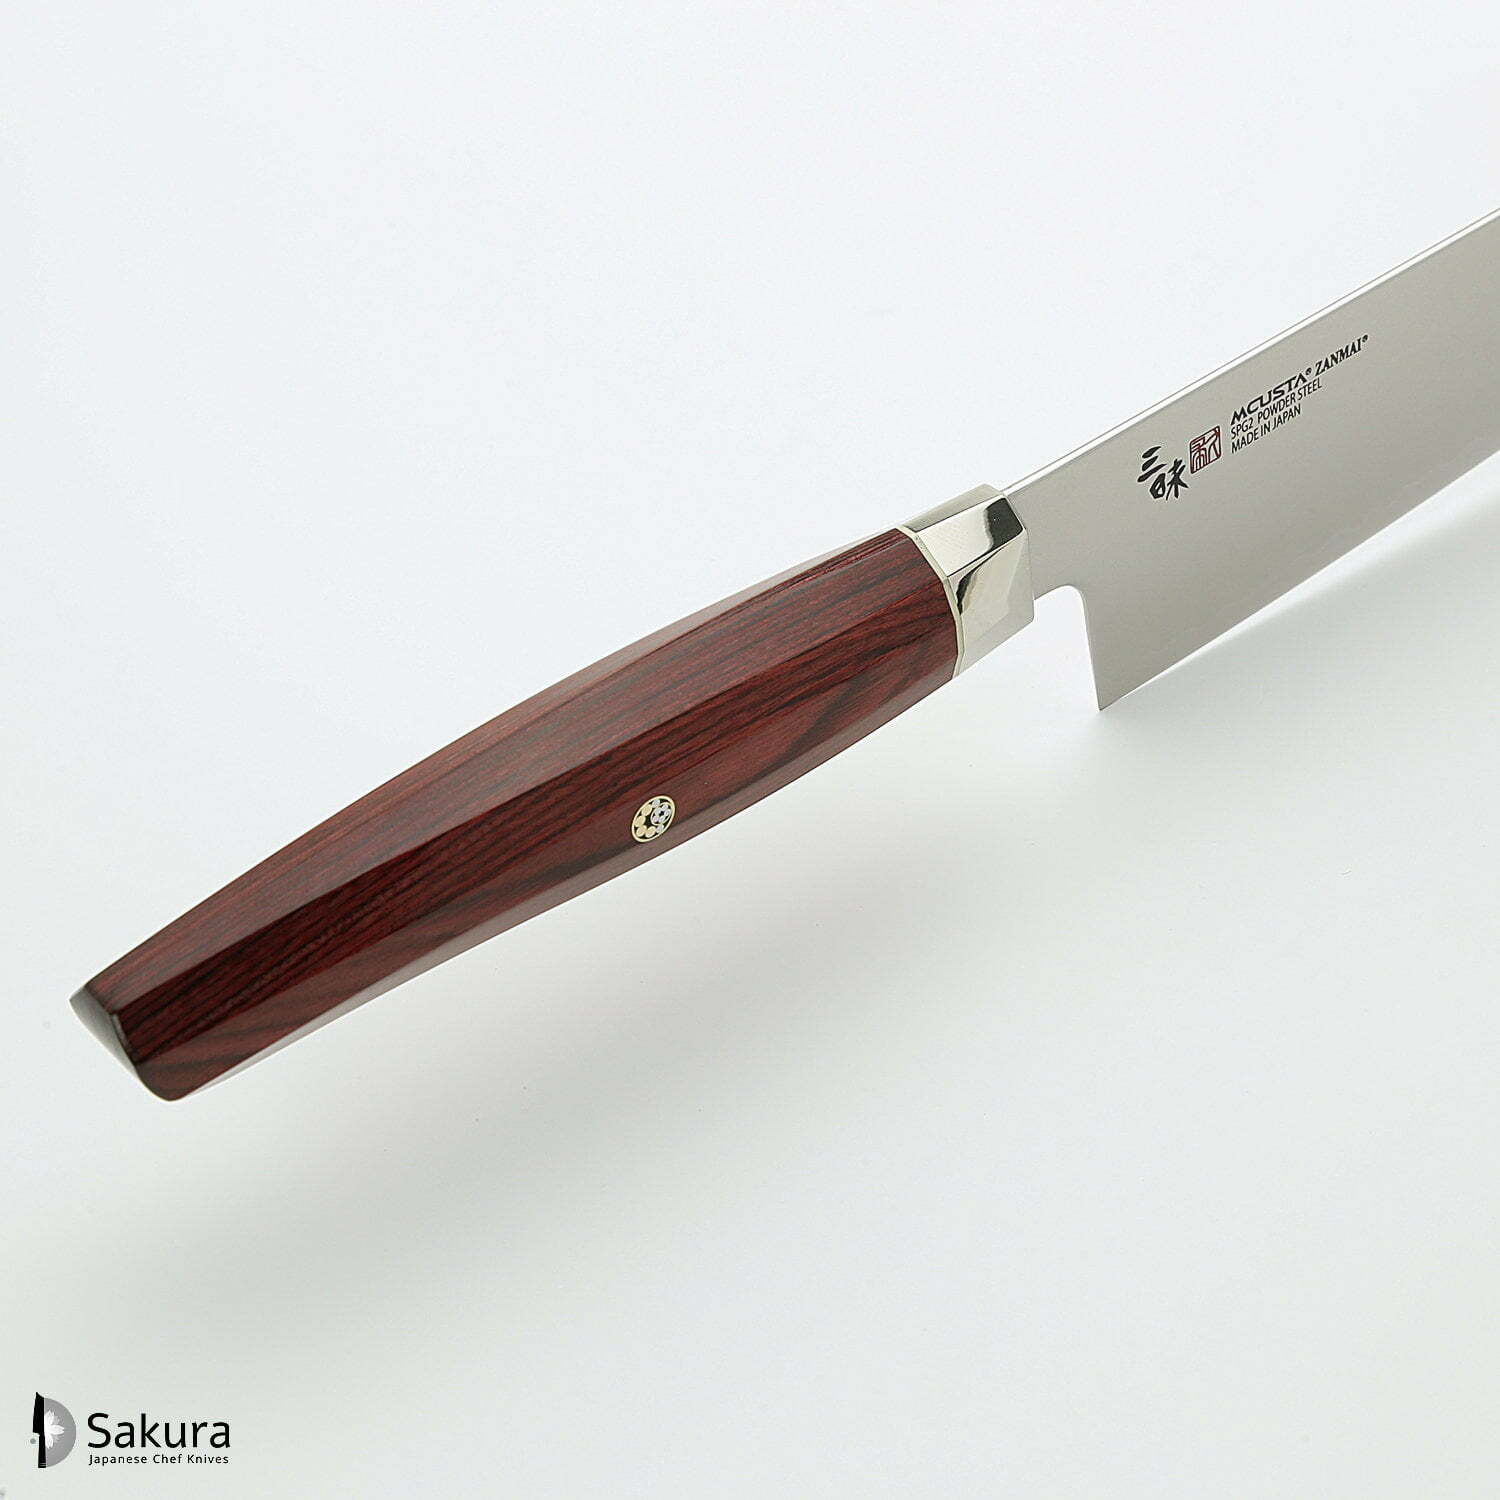 סכין שף רב-תכליתית גִּיוּטוֹ 210מ״מ מחושלת בעבודת יד 3 שכבות: פלדת פחמן יפנית מתקדמת מסוג R2/SG2 עטופה פלדת אל-חלד גימור מט מלוטש מקוסטה זאנמאיי יפן ZRR-1205G